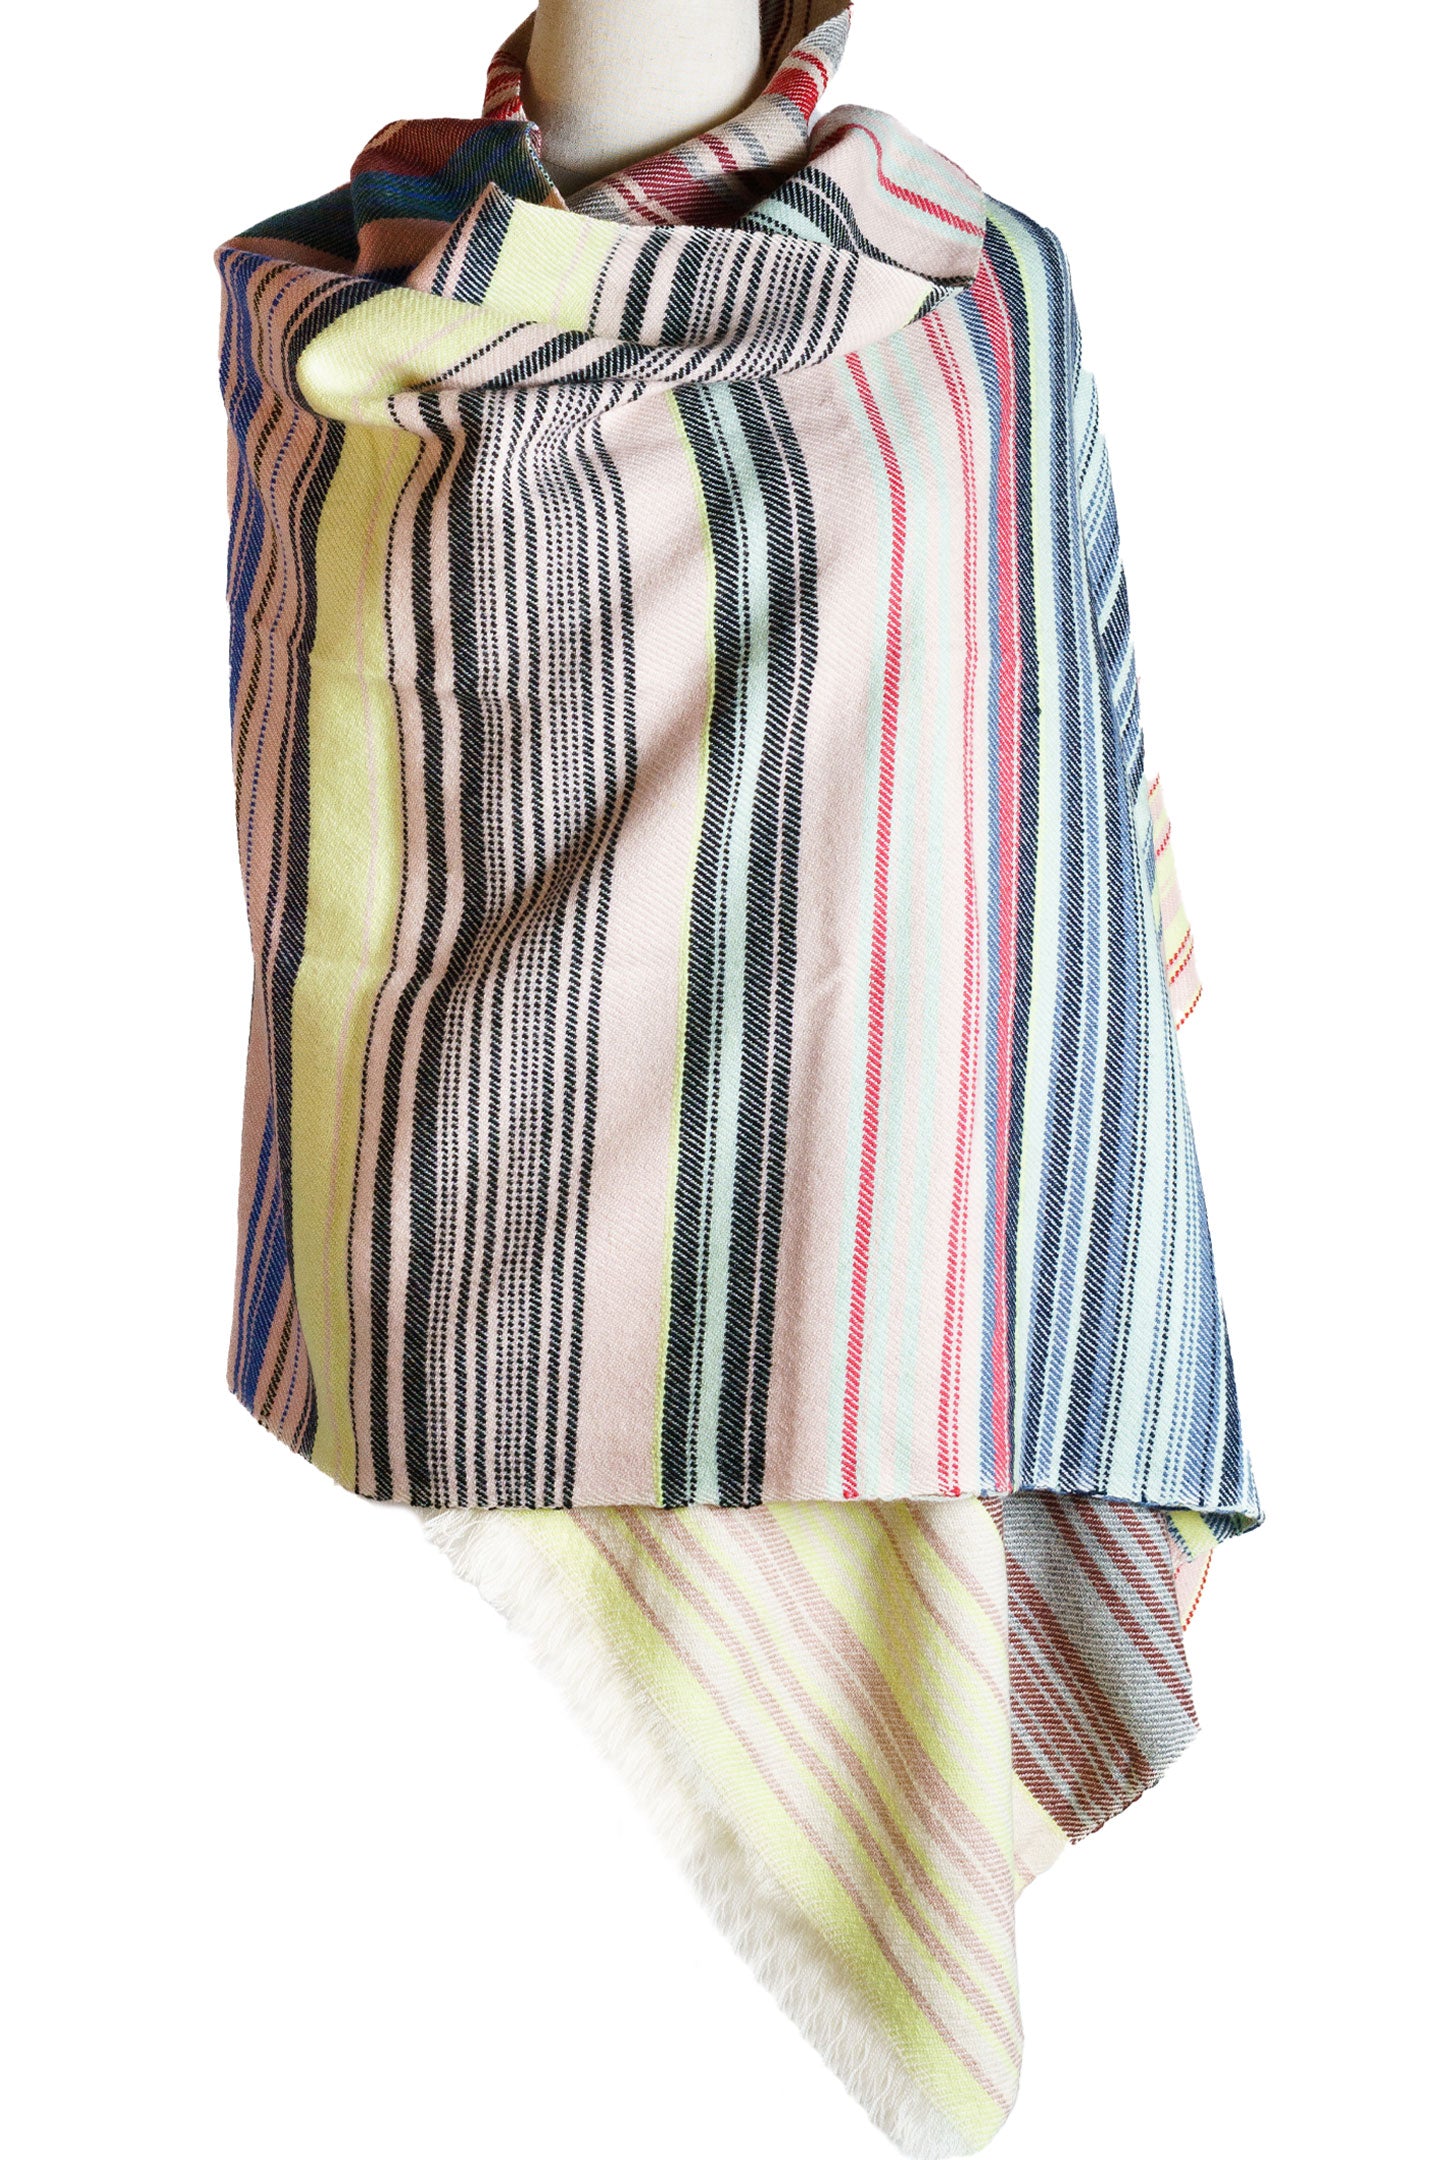 Pure Multicolored Cashmere Shawl Wrap